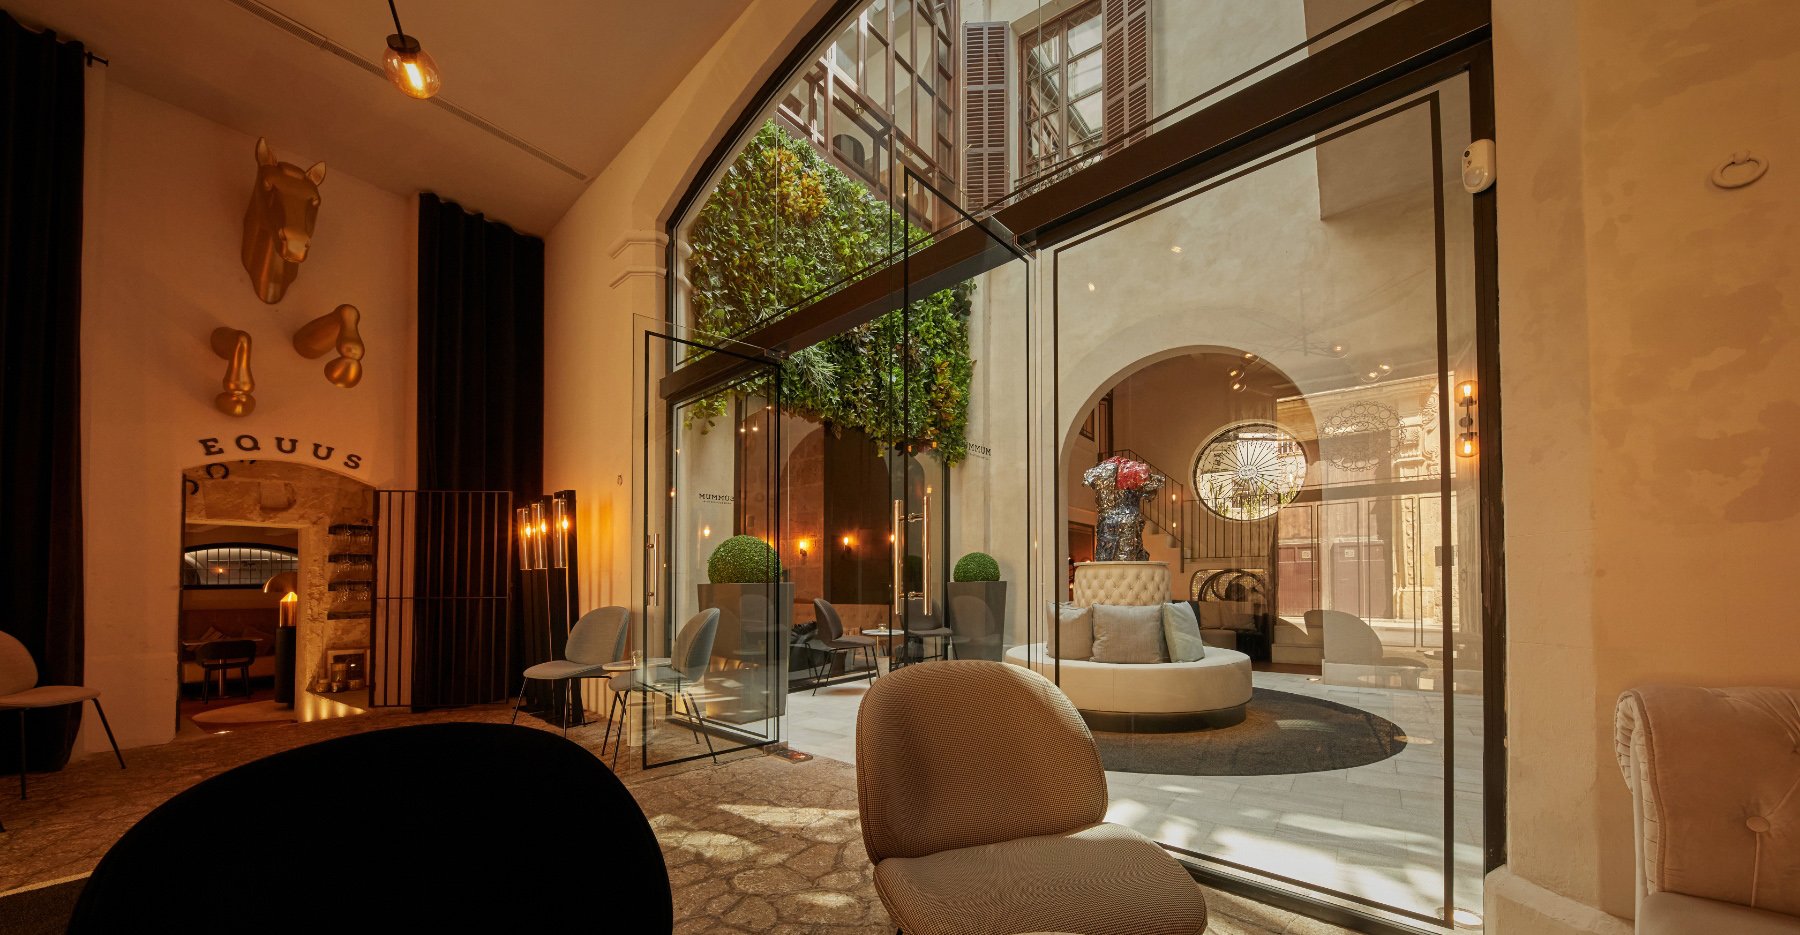 Meliá incorpora dos hoteles boutique en Mallorca tras una alianza con Summum Hotel Group. - MELIÁ HOTELS INTERNATIONAL